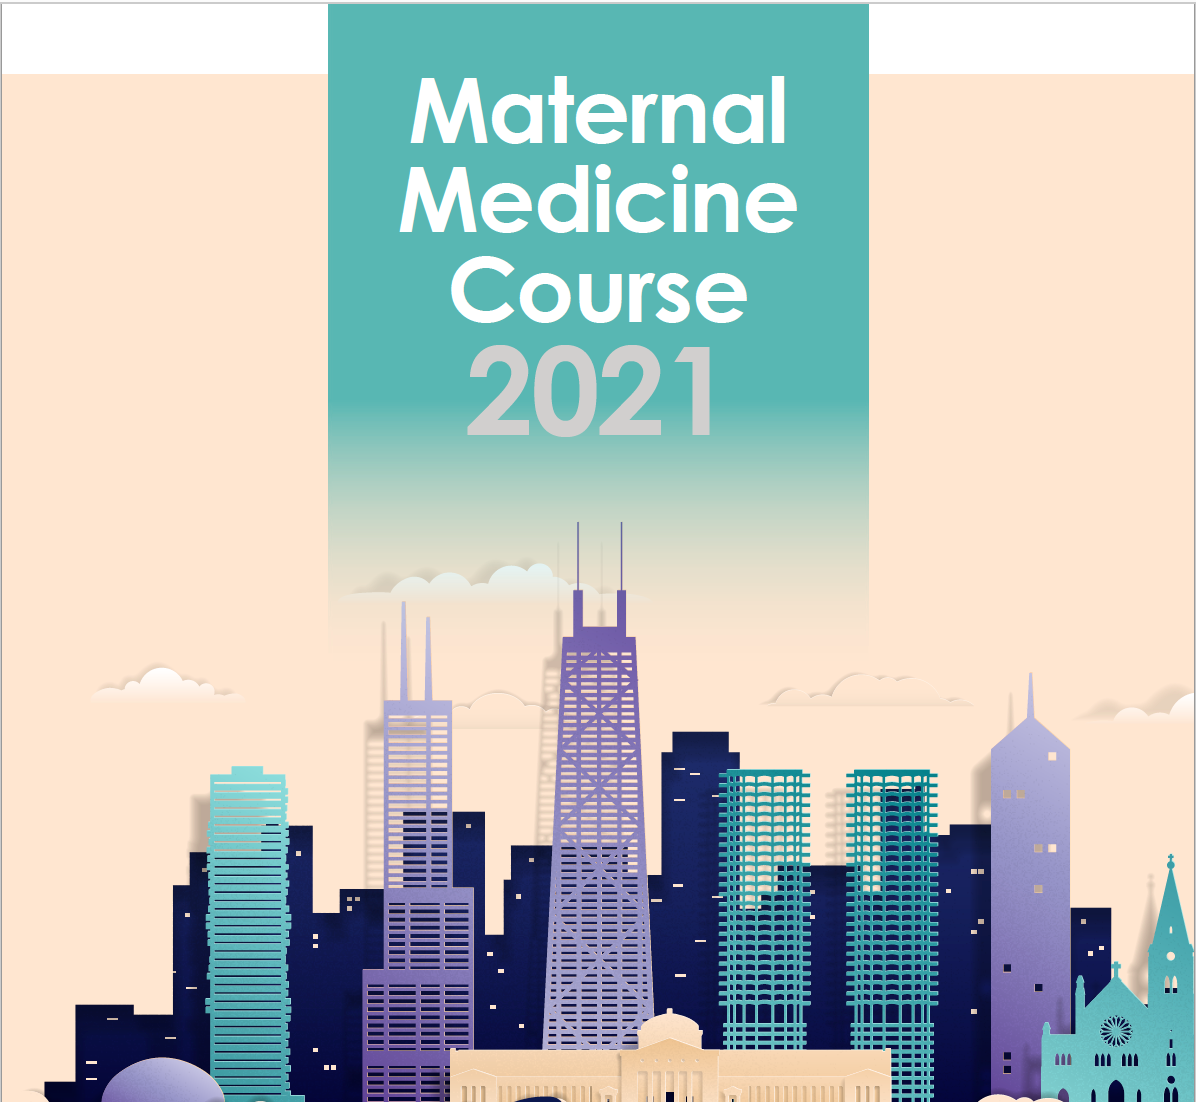 SMFM’s 5th Annual 2021 Maternal Medicine Course